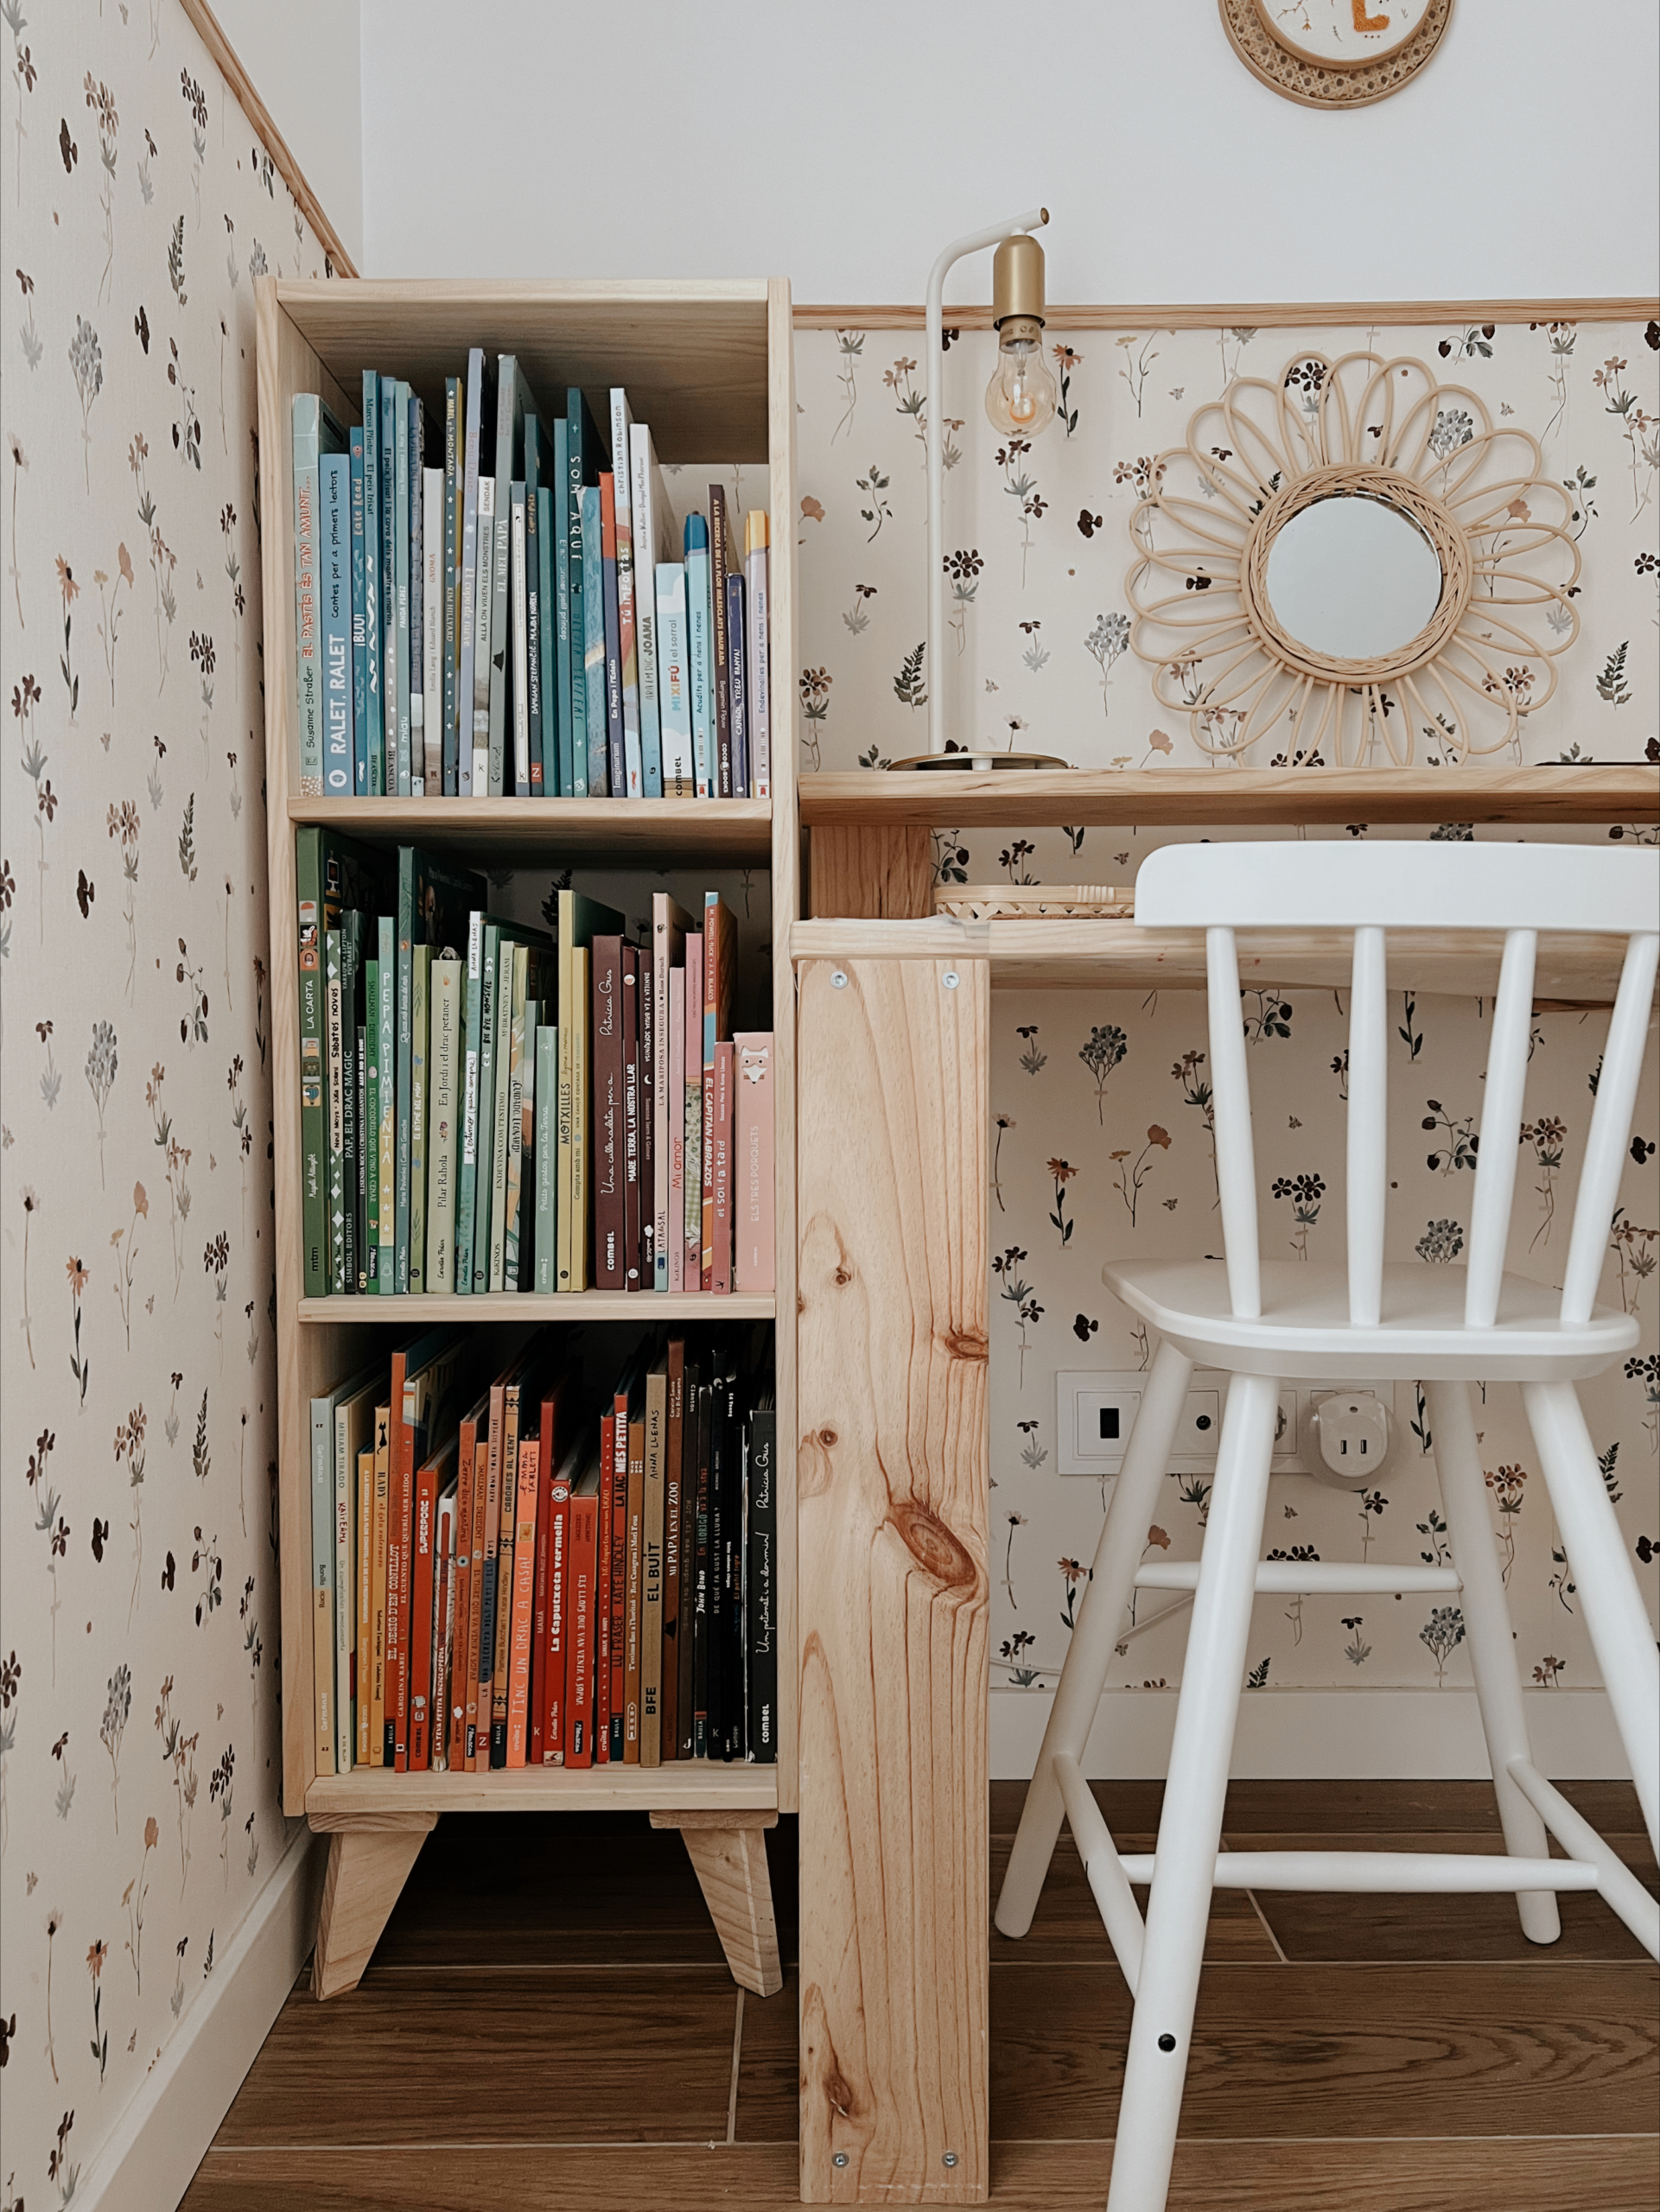 Cómo deberías colocar los libros en la estantería de tu casa?